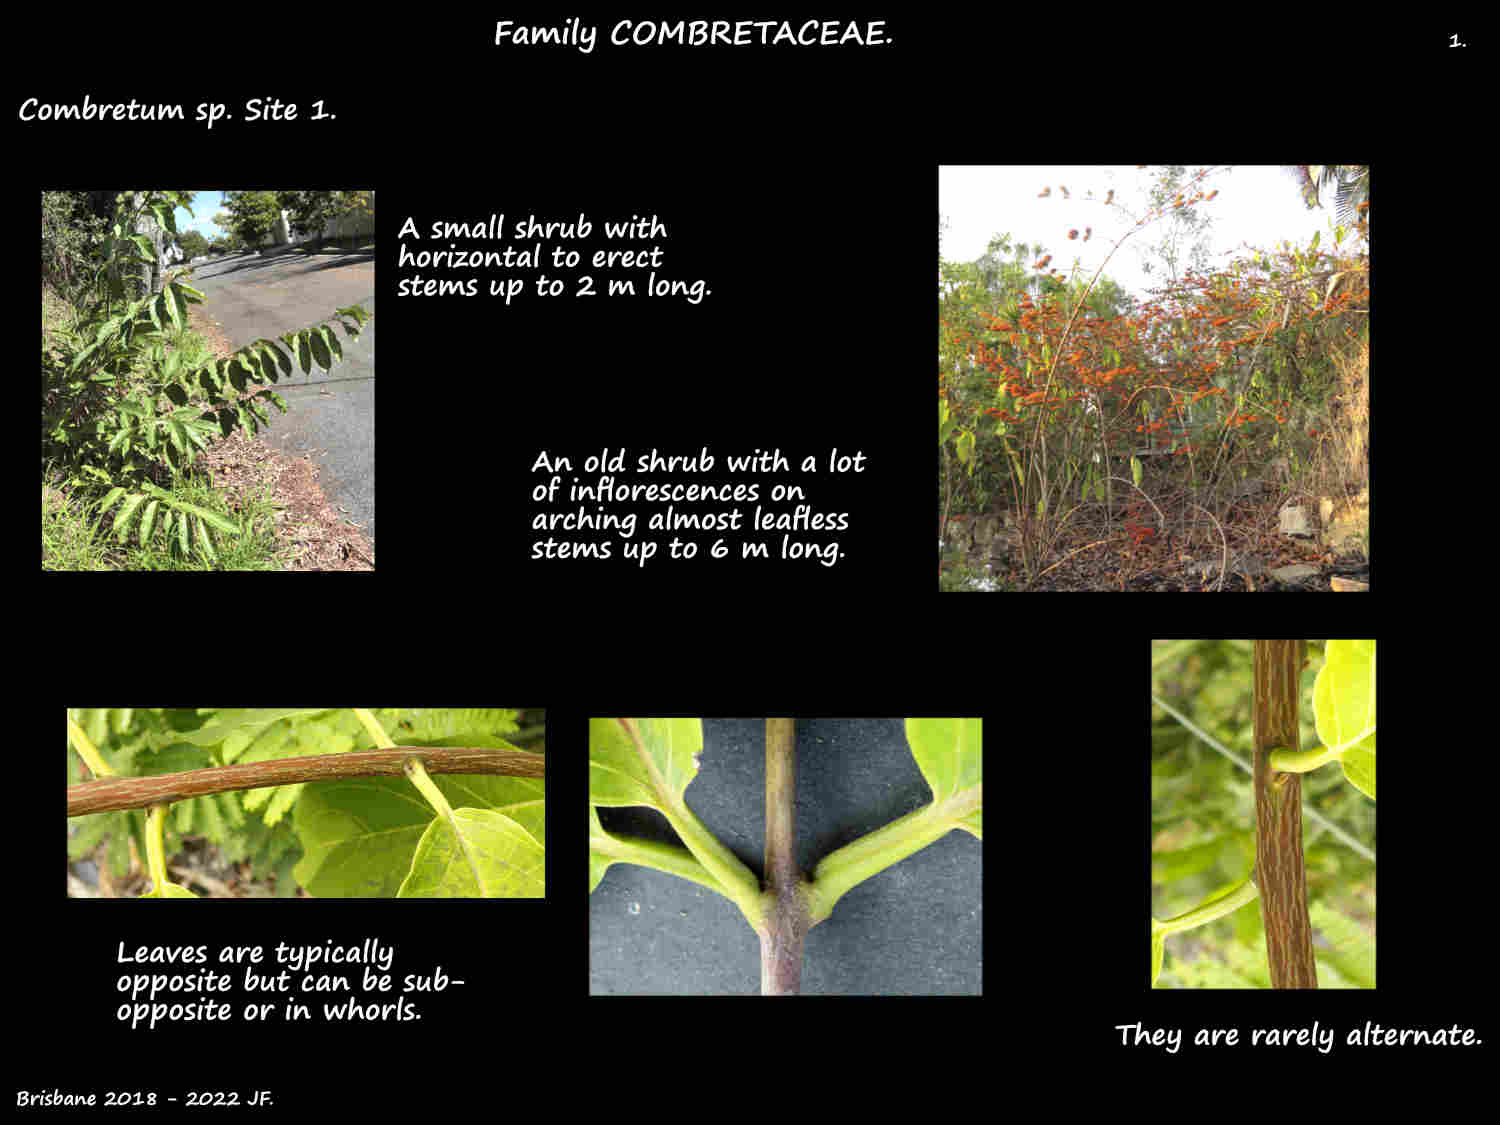 1 Combretum shrubs & leaf arrangement